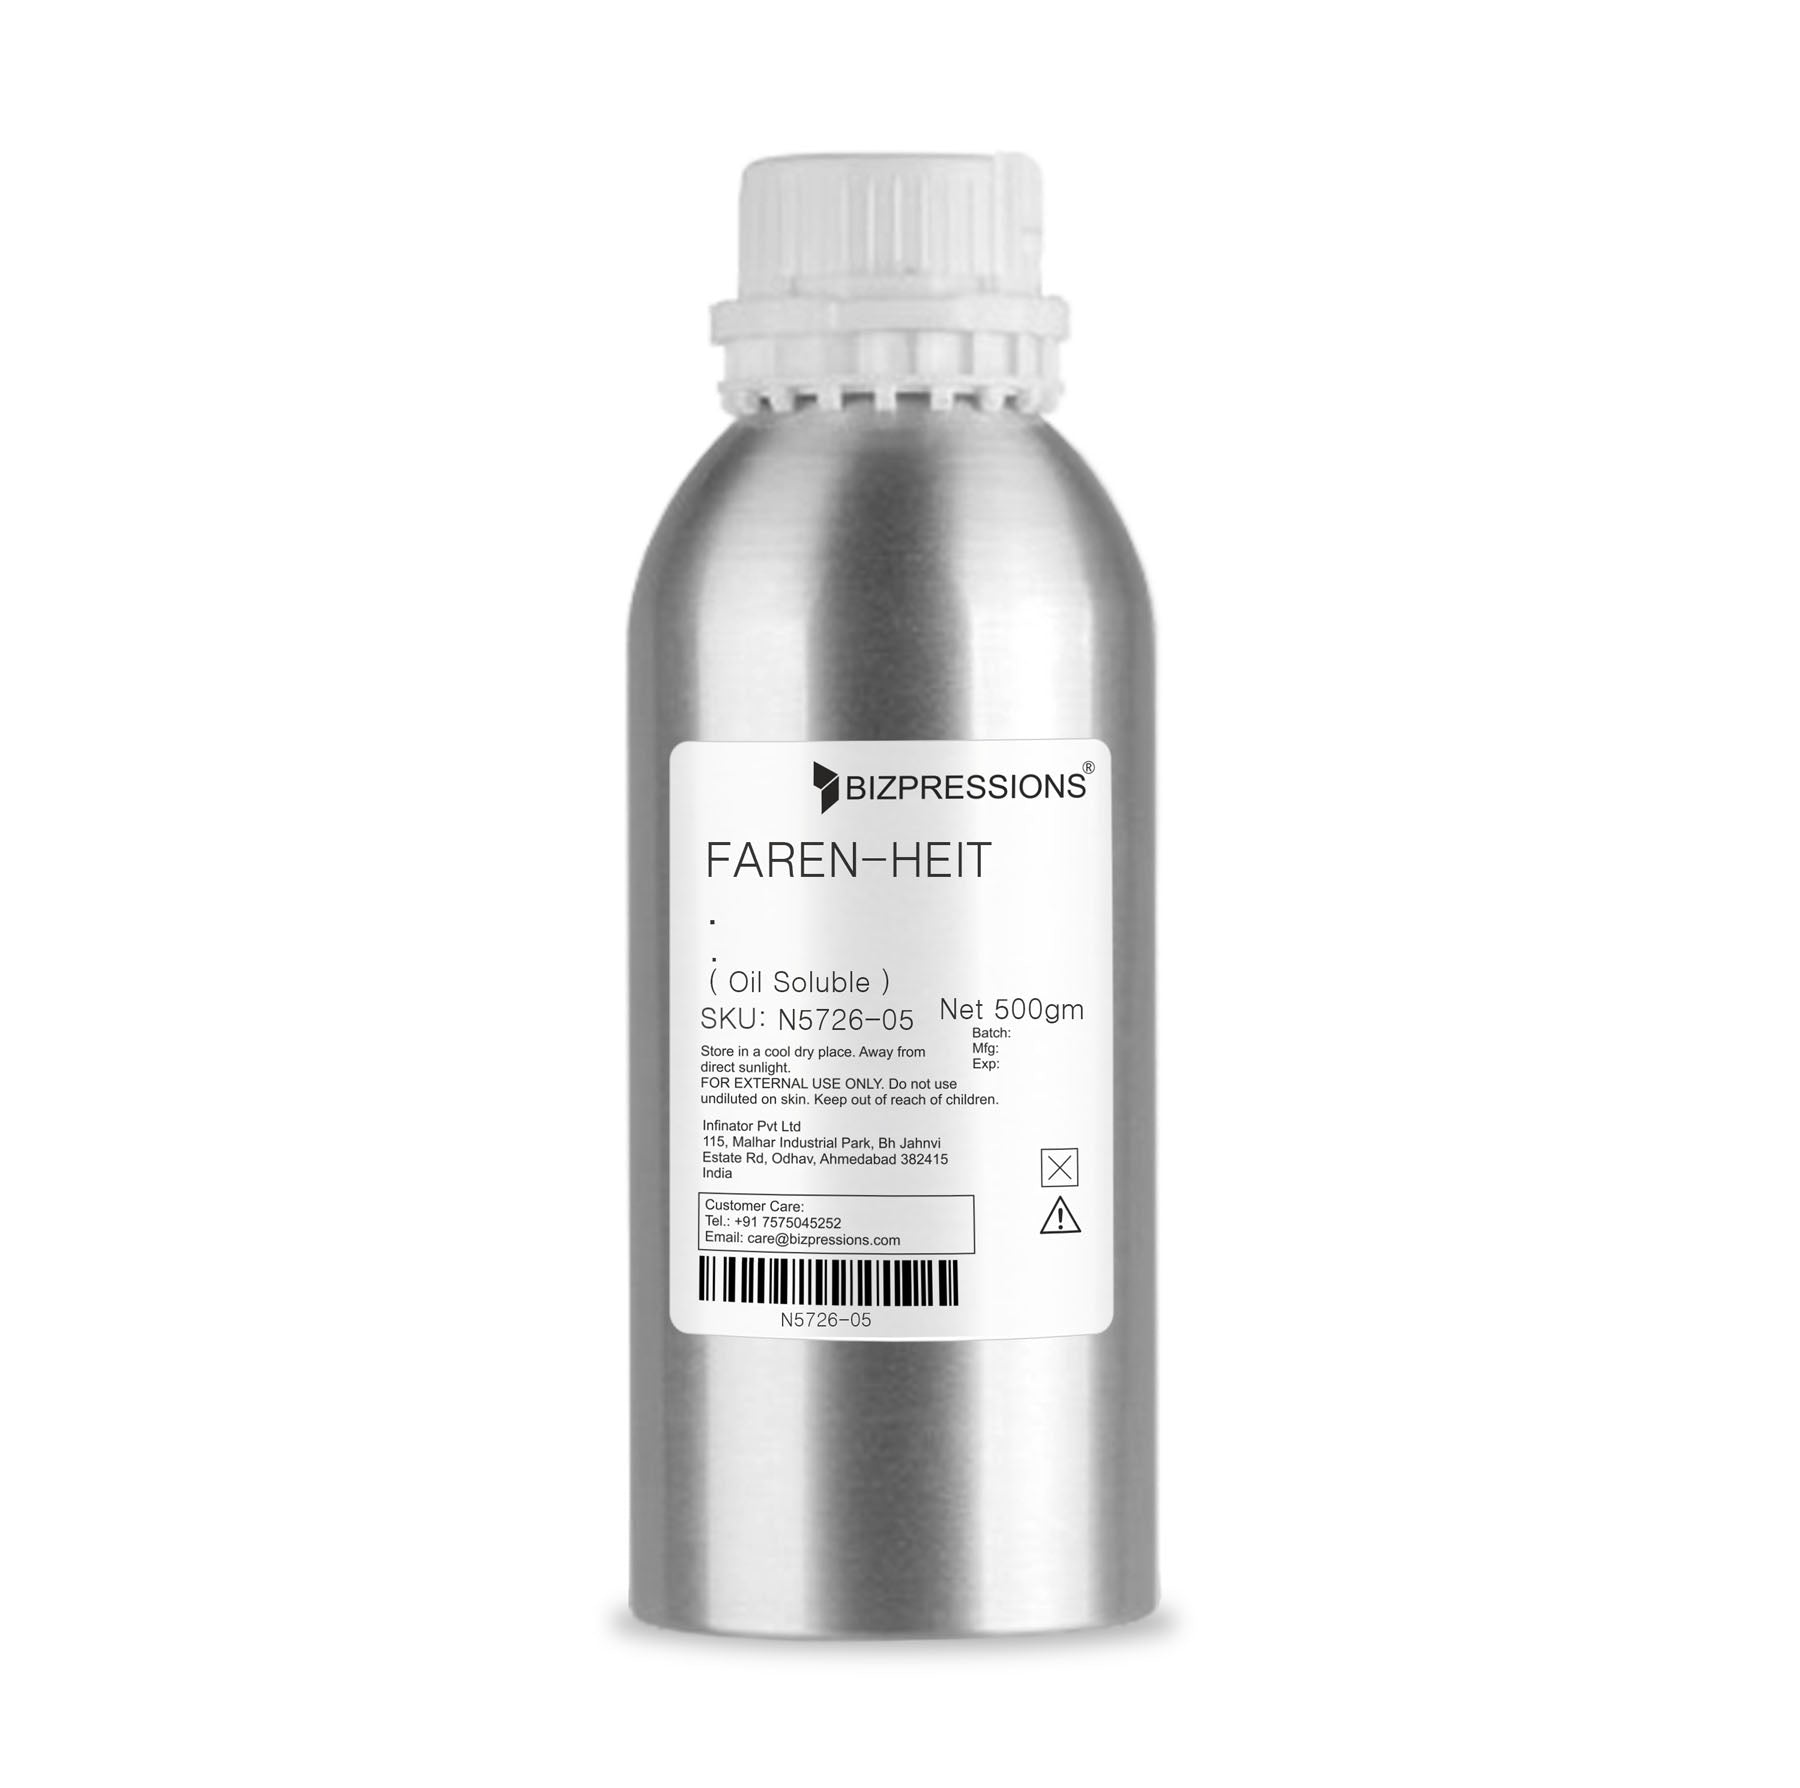 FAREN-HEIT - Fragrance ( Oil Soluble ) - 500 gm